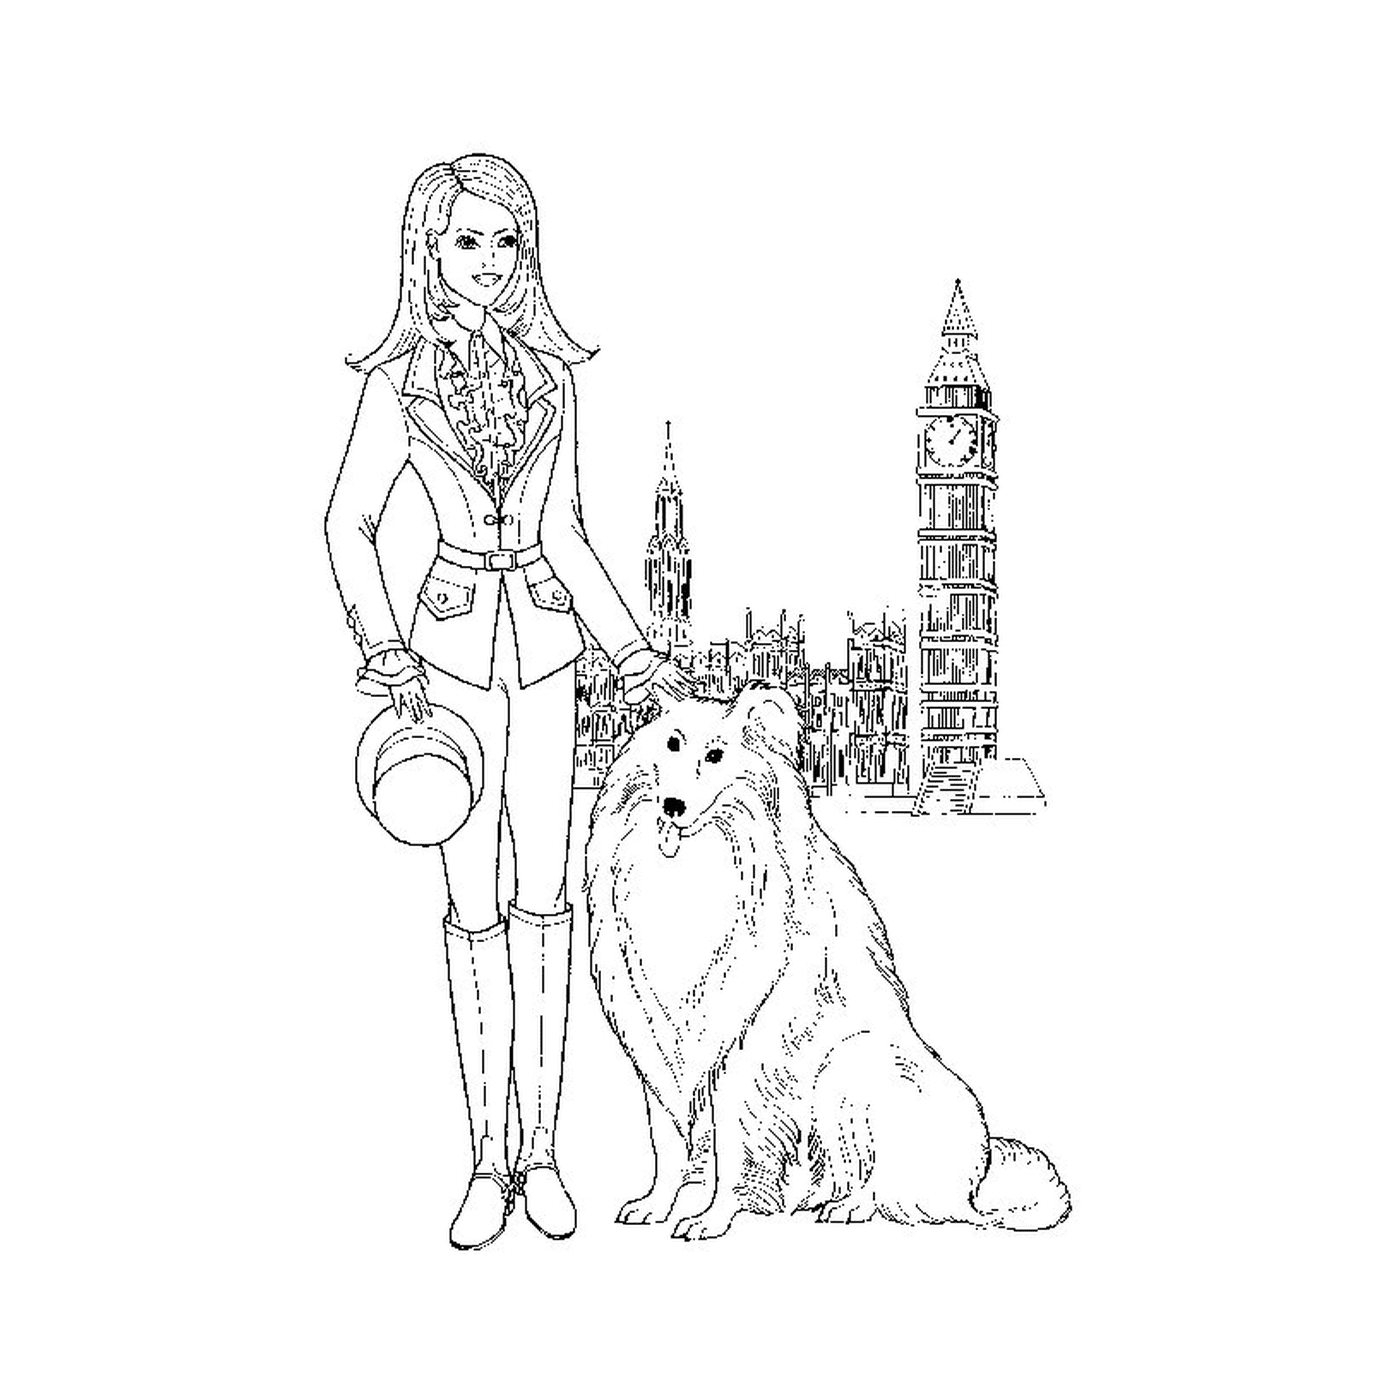  Una donna in piedi accanto a un cane 